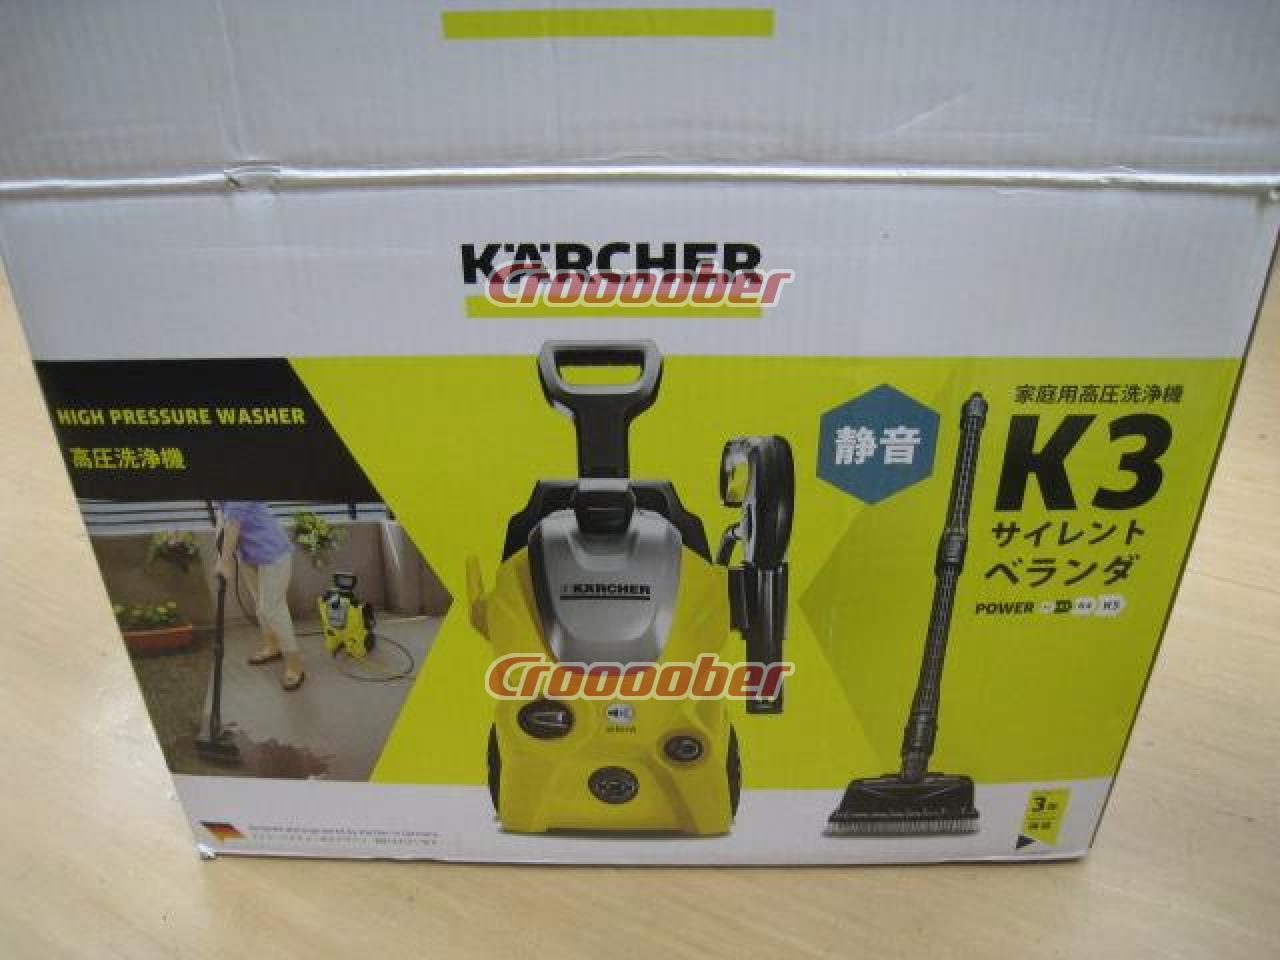 のぼり「リサイクル」 KARCHER ケルヒャー K3 SILENT 60Hz 高圧洗浄機